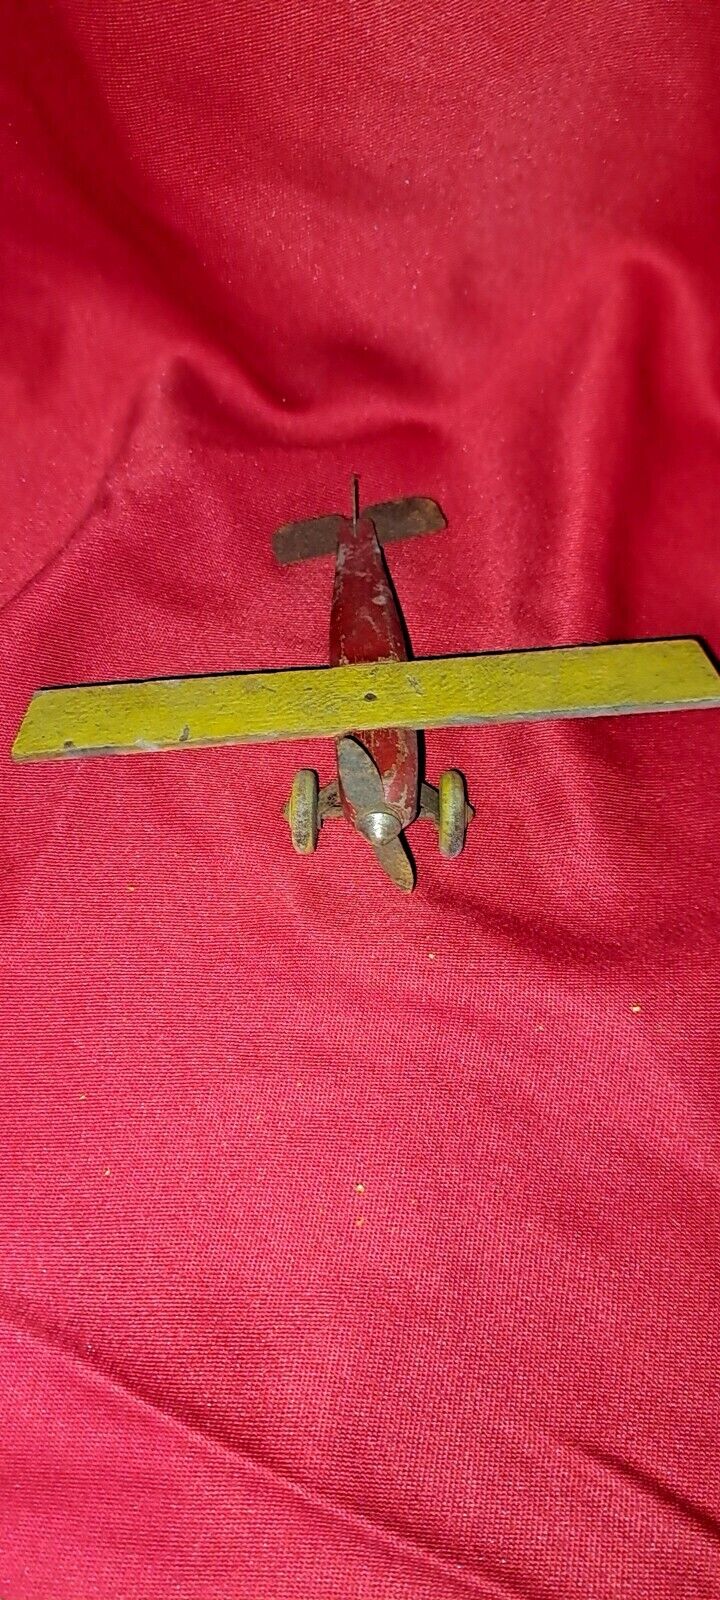 Vintage Toy Wood And Metal Airplane